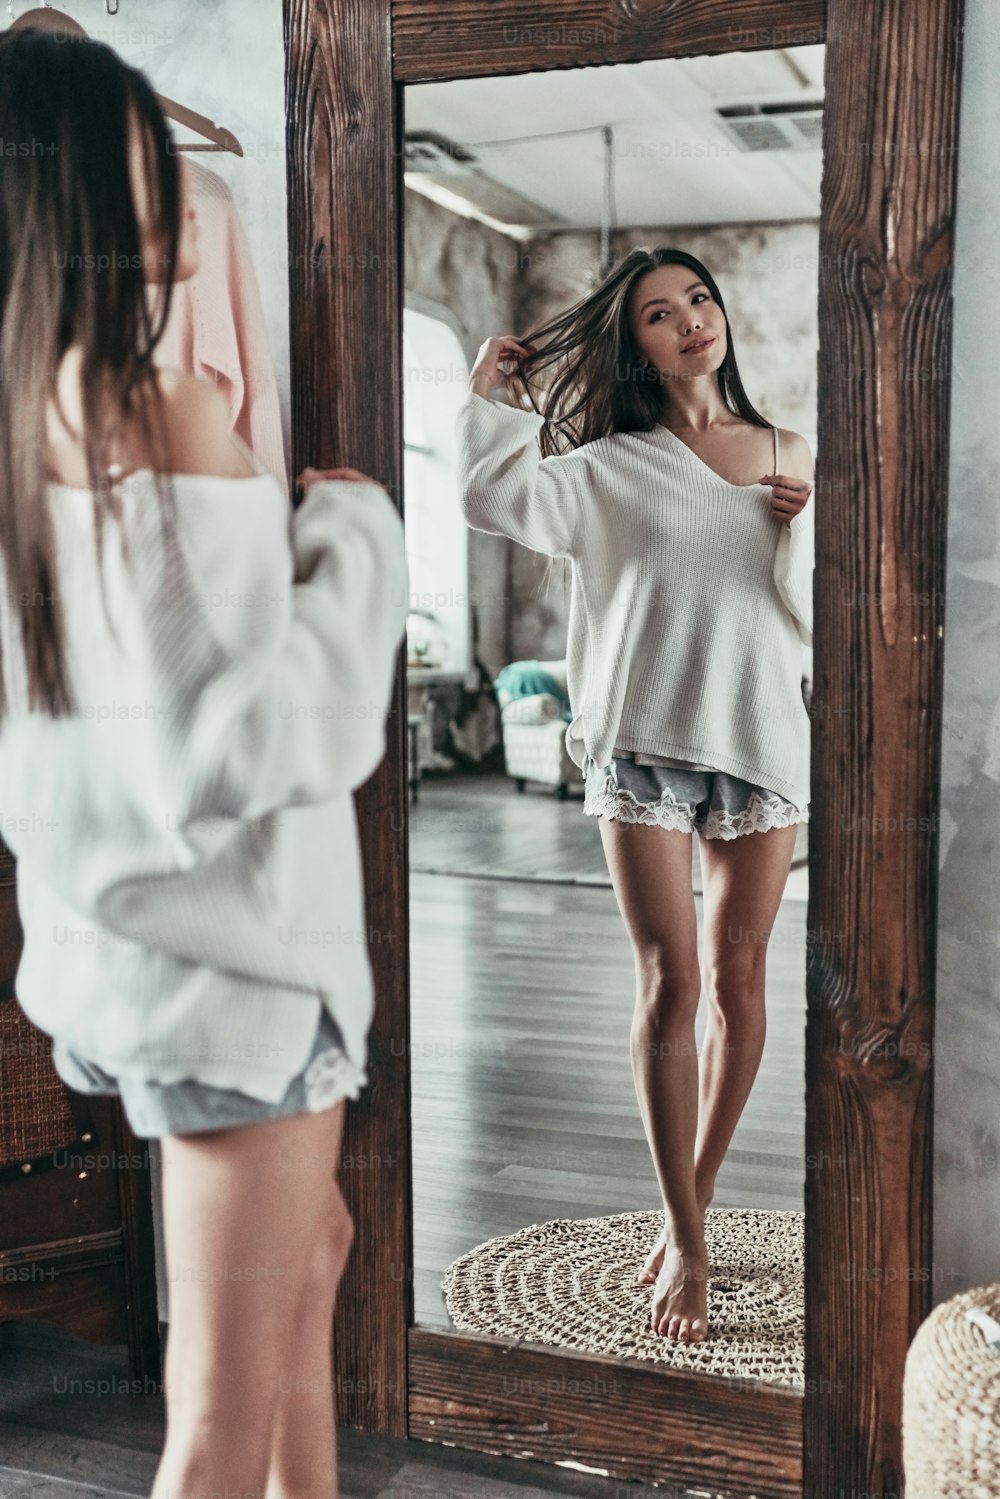 Ganzkörperliches Spiegelbild einer attraktiven jungen Frau, die Hand ins Haar hält und lächelt, während sie zu Hause vor dem Spiegel steht